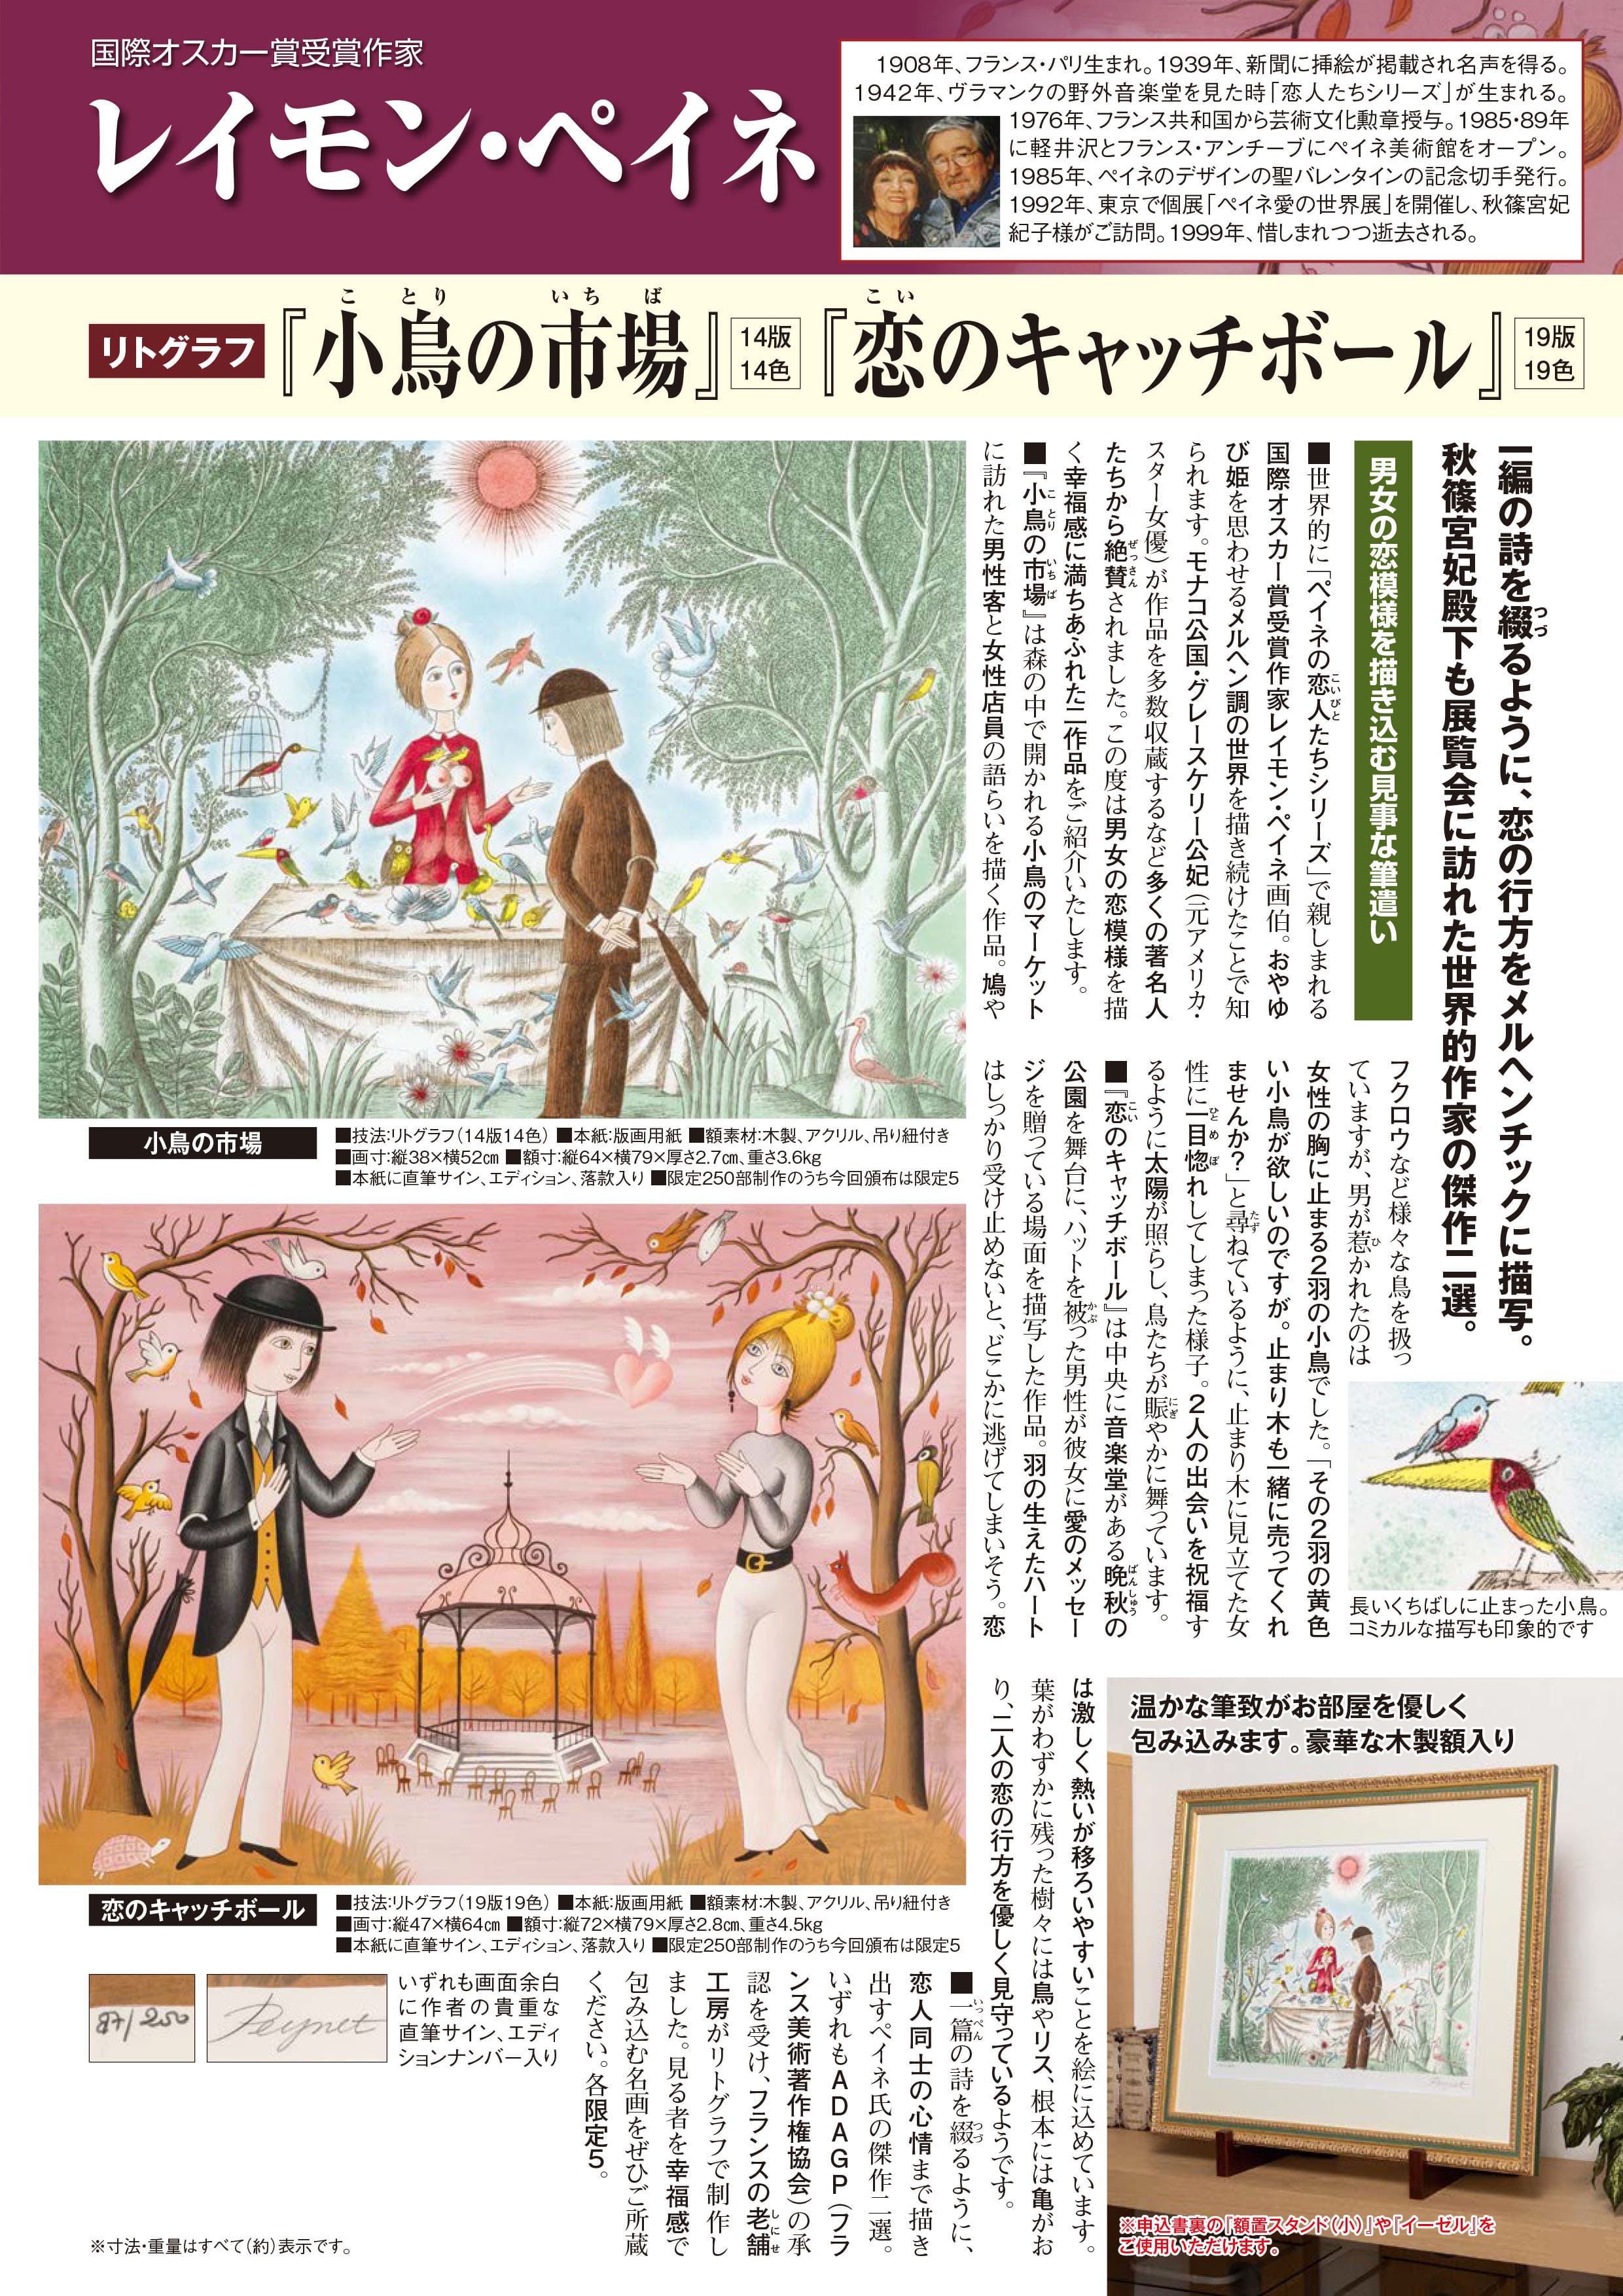 レイモン・ペイネ リトグラフ『小鳥の市場』 | 東京書芸館公式通販 